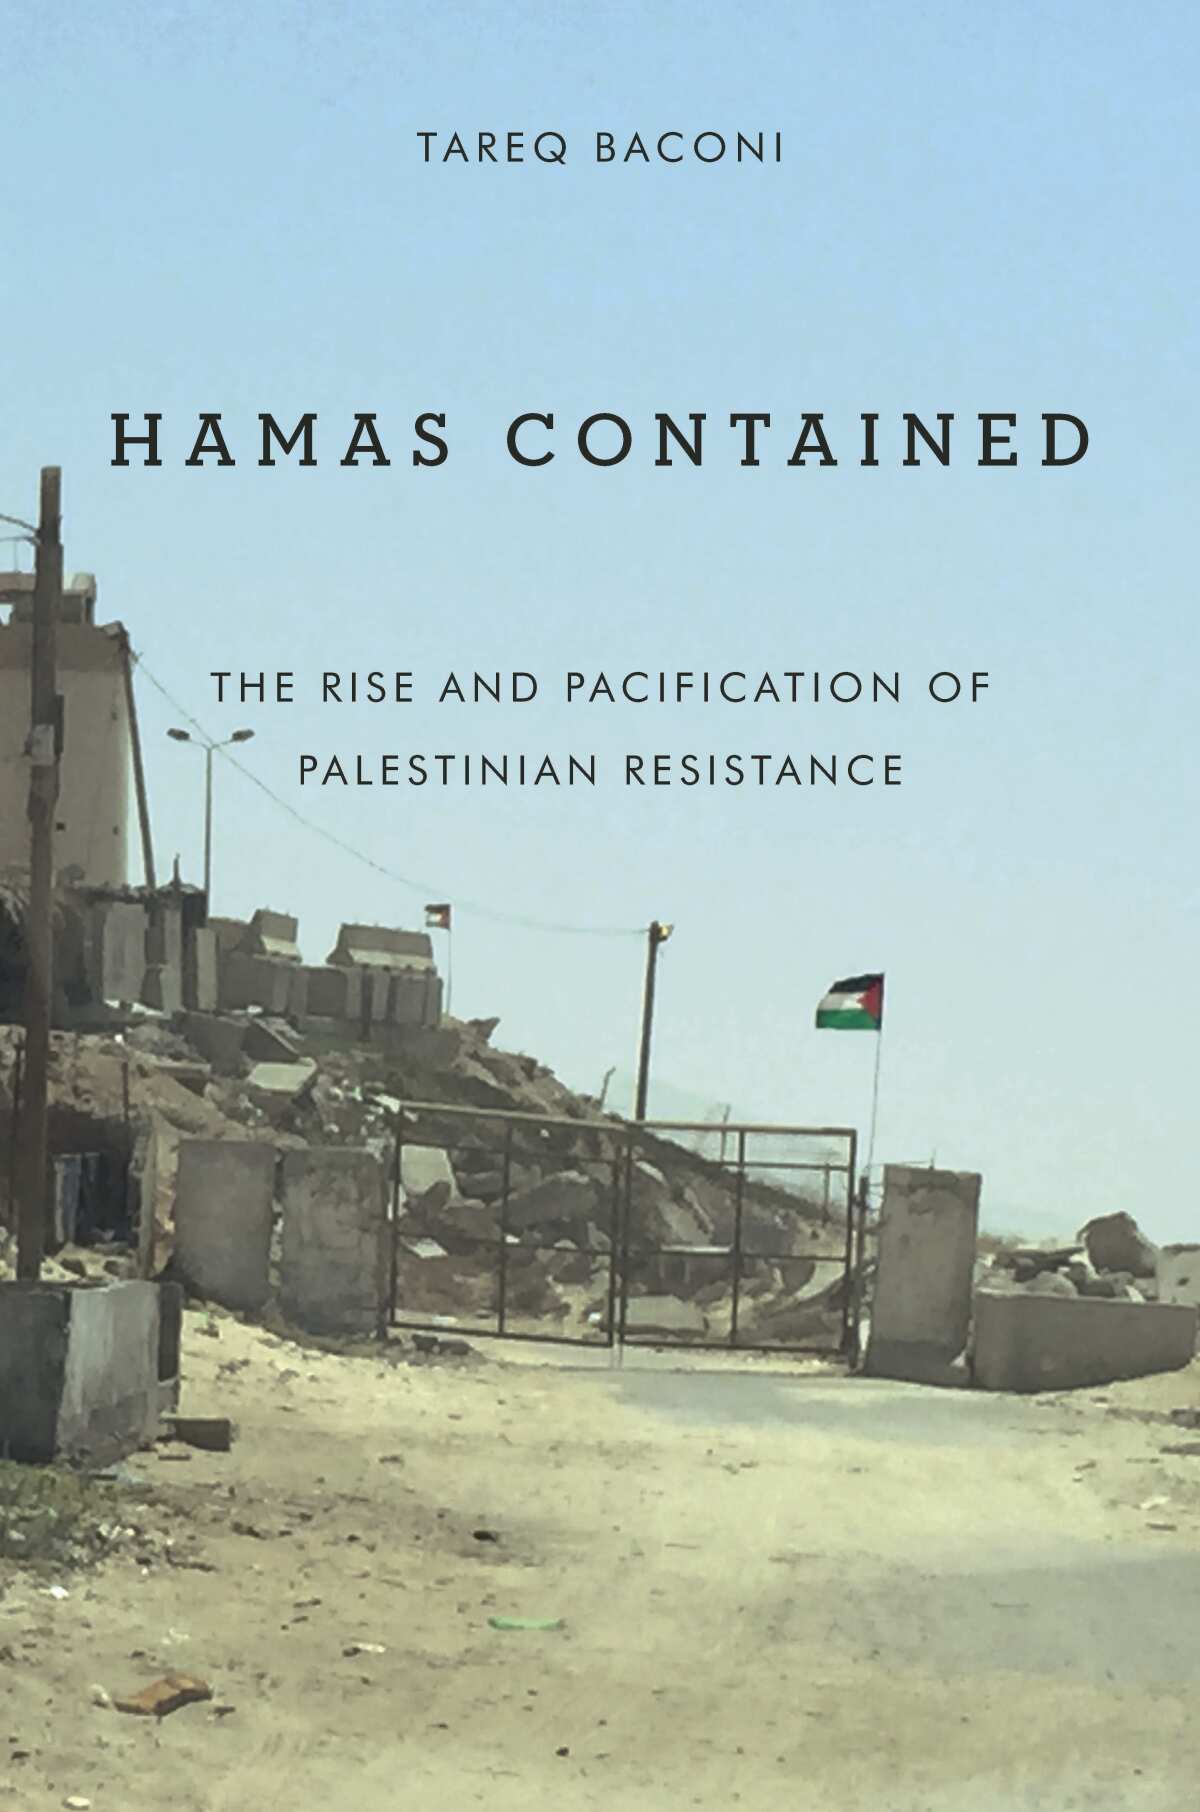 "Hamas eingedämmt," von Tareq Baconi